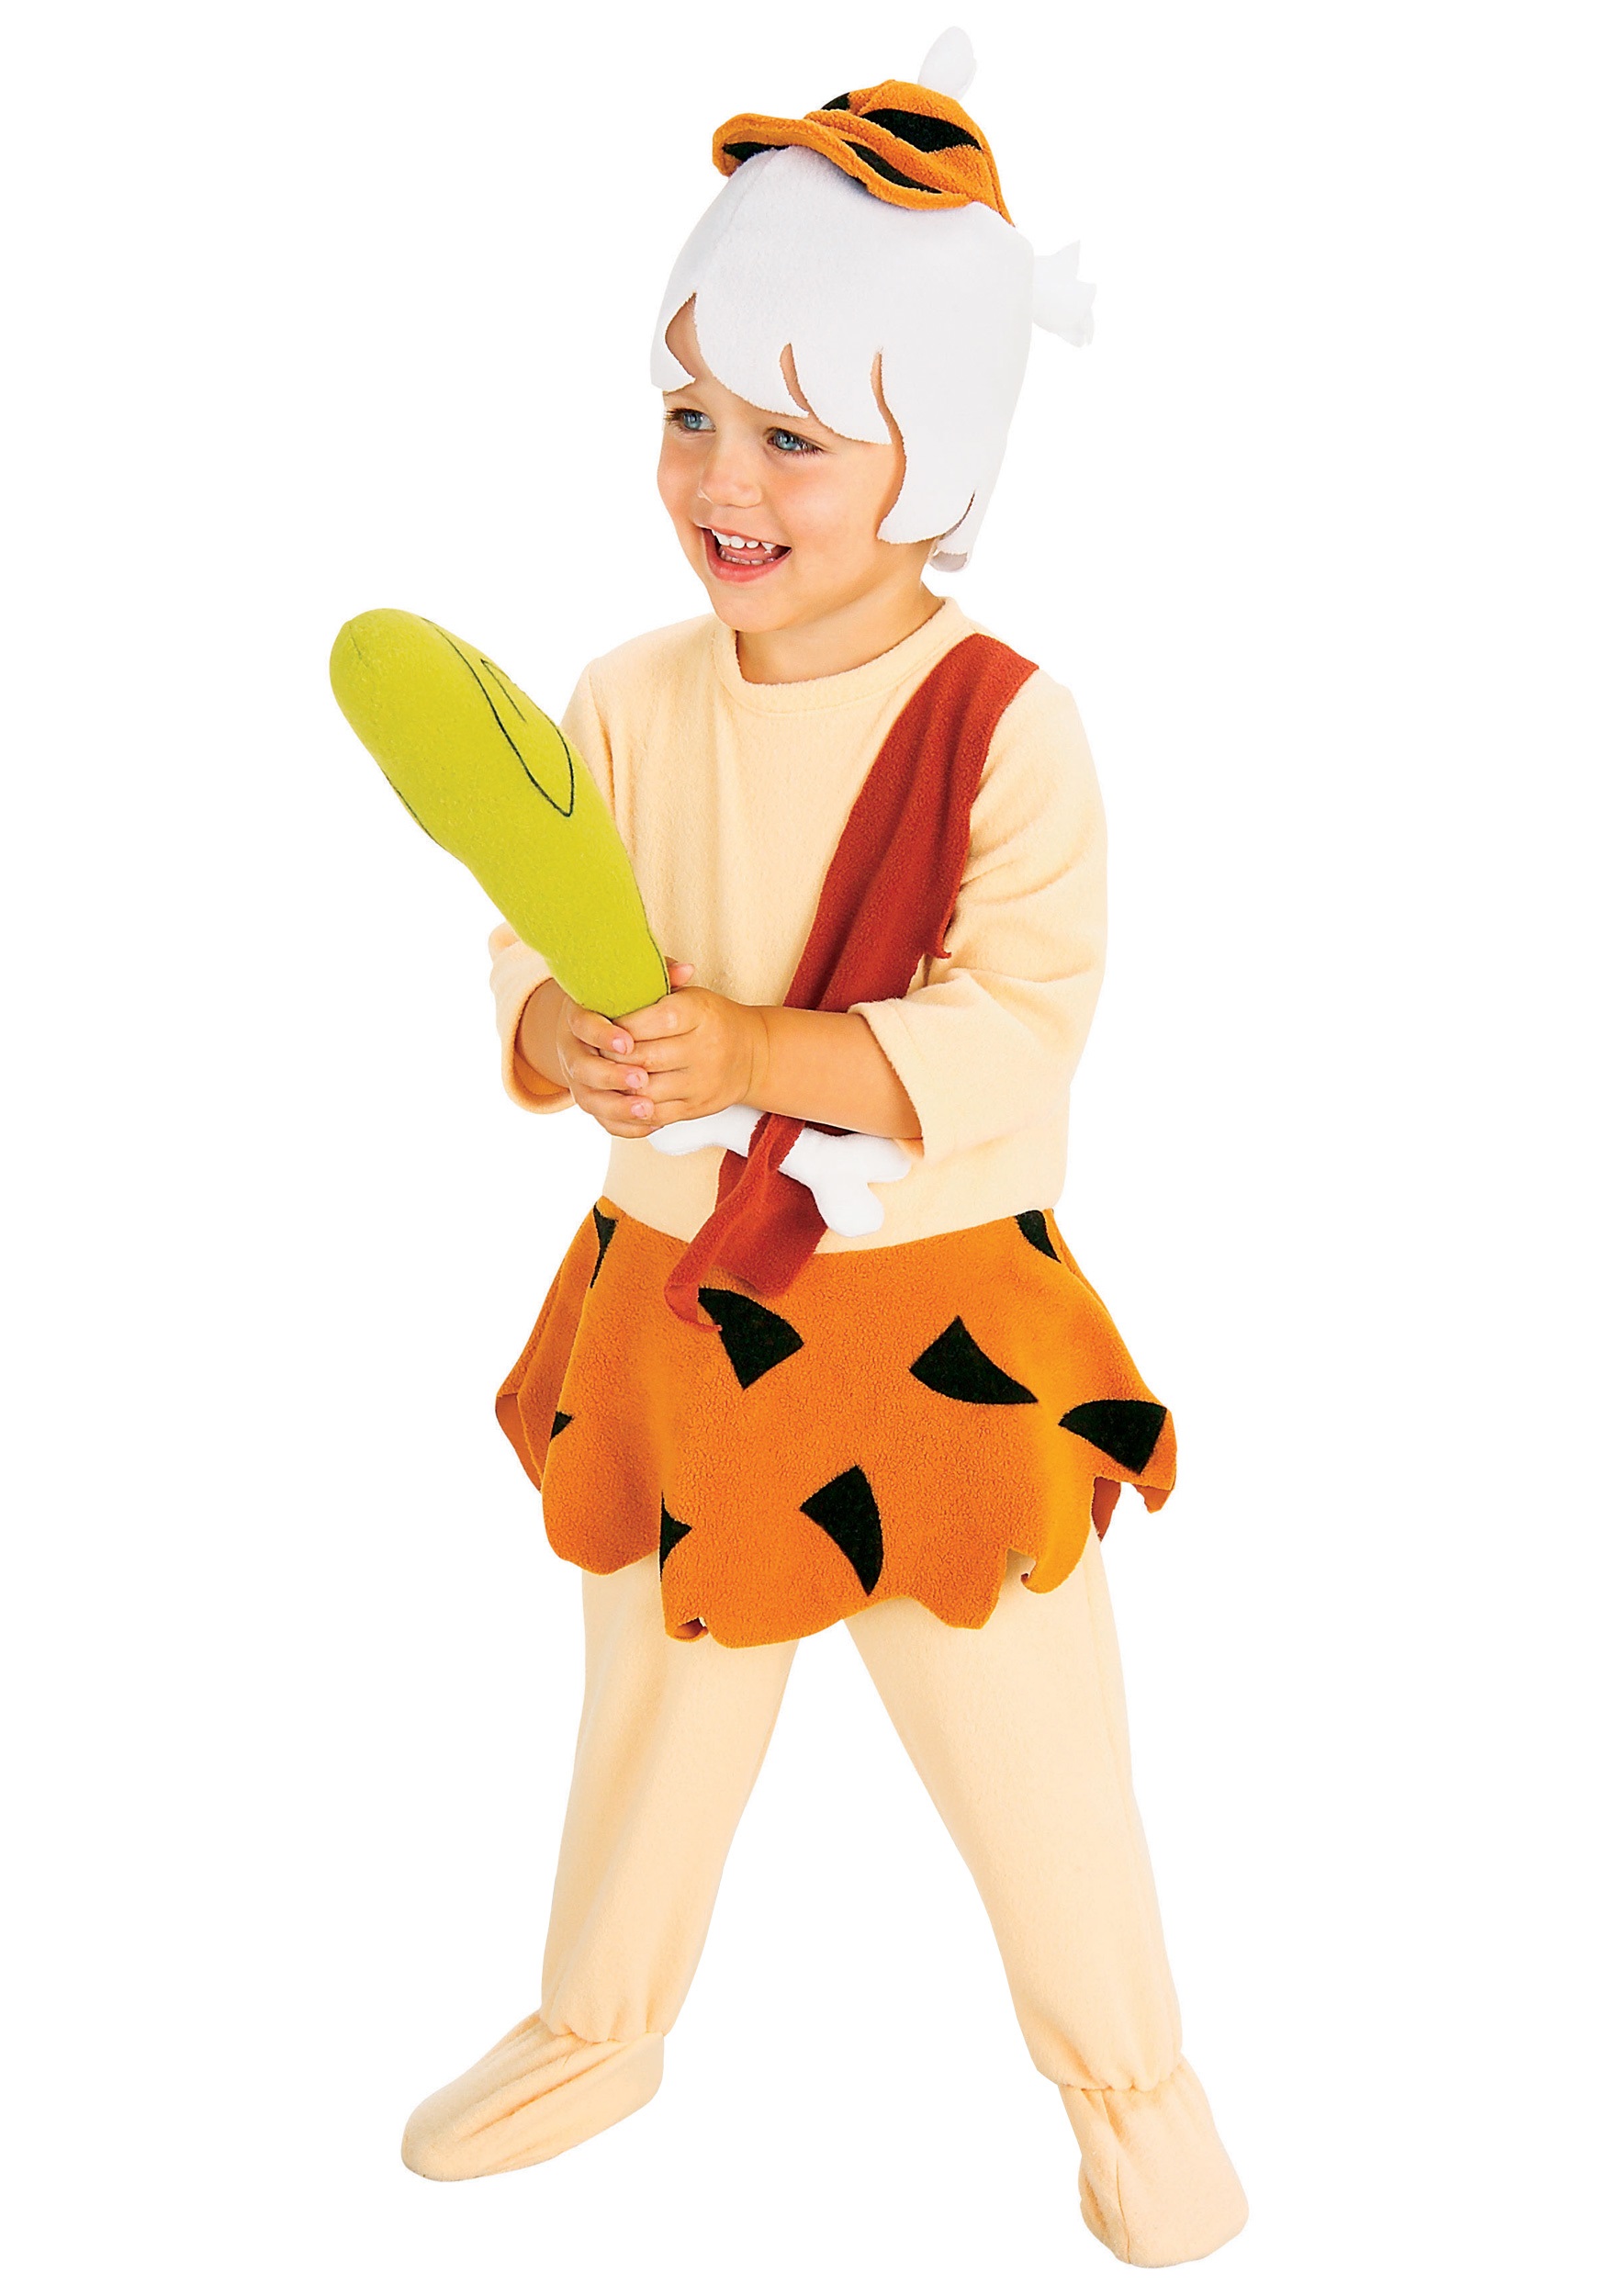 Bamm Bamm Toddler Costume. 